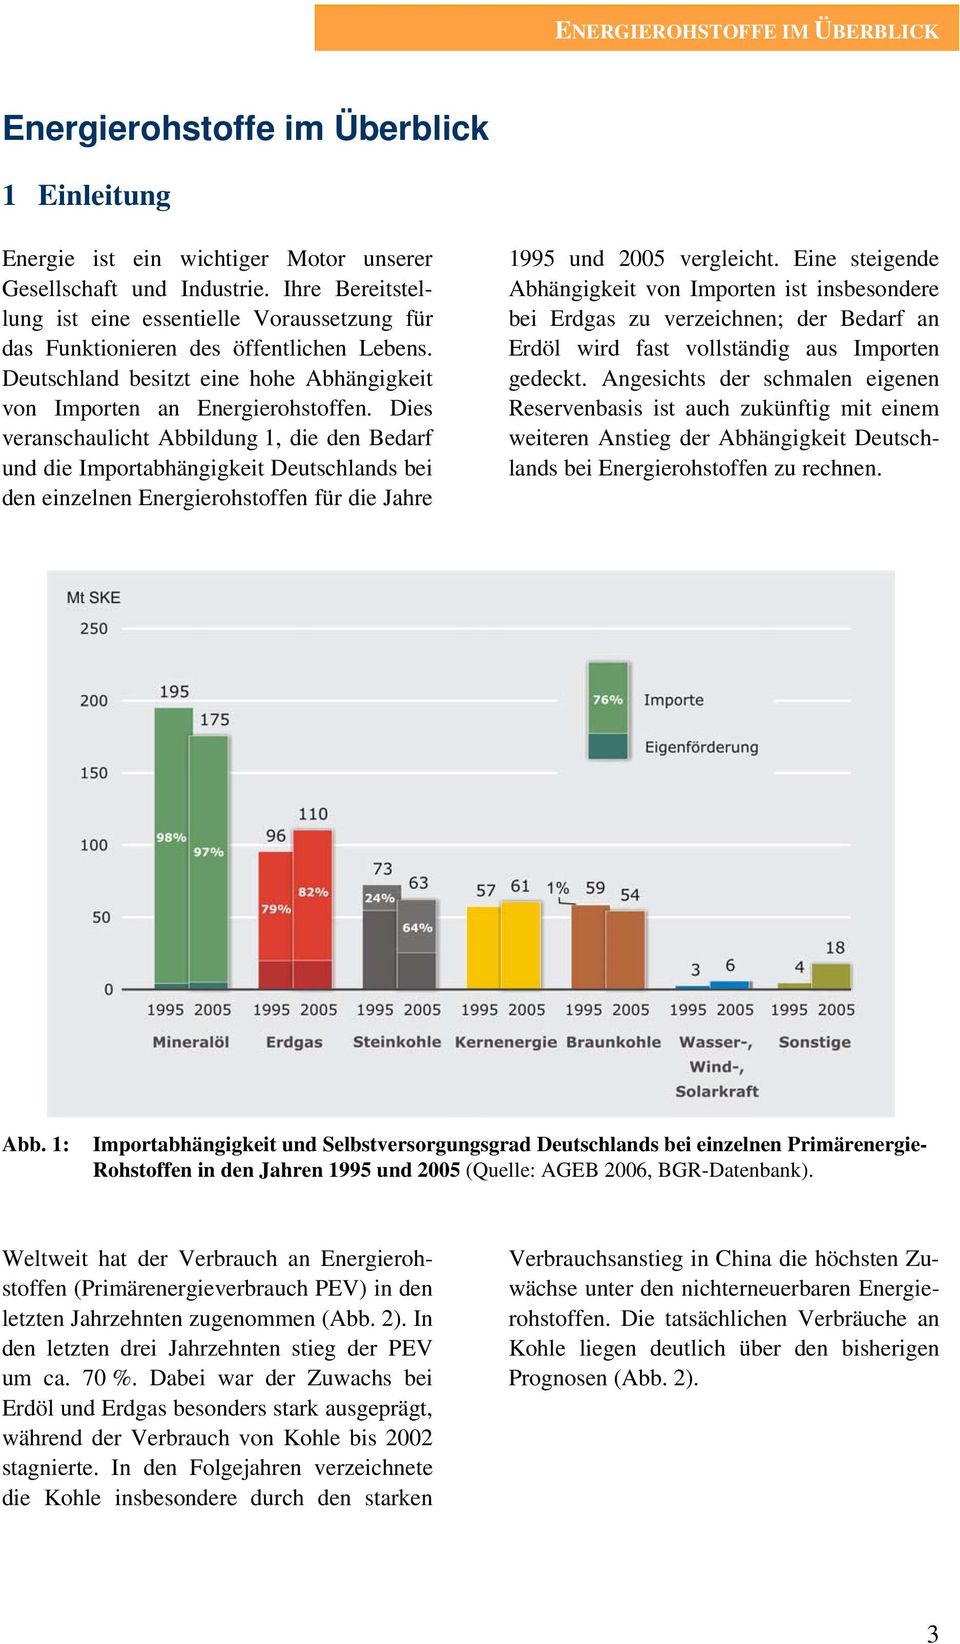 Dies veranschaulicht Abbildung 1, die den Bedarf und die Importabhängigkeit Deutschlands bei den einzelnen Energierohstoffen für die Jahre 1995 und 2005 vergleicht.